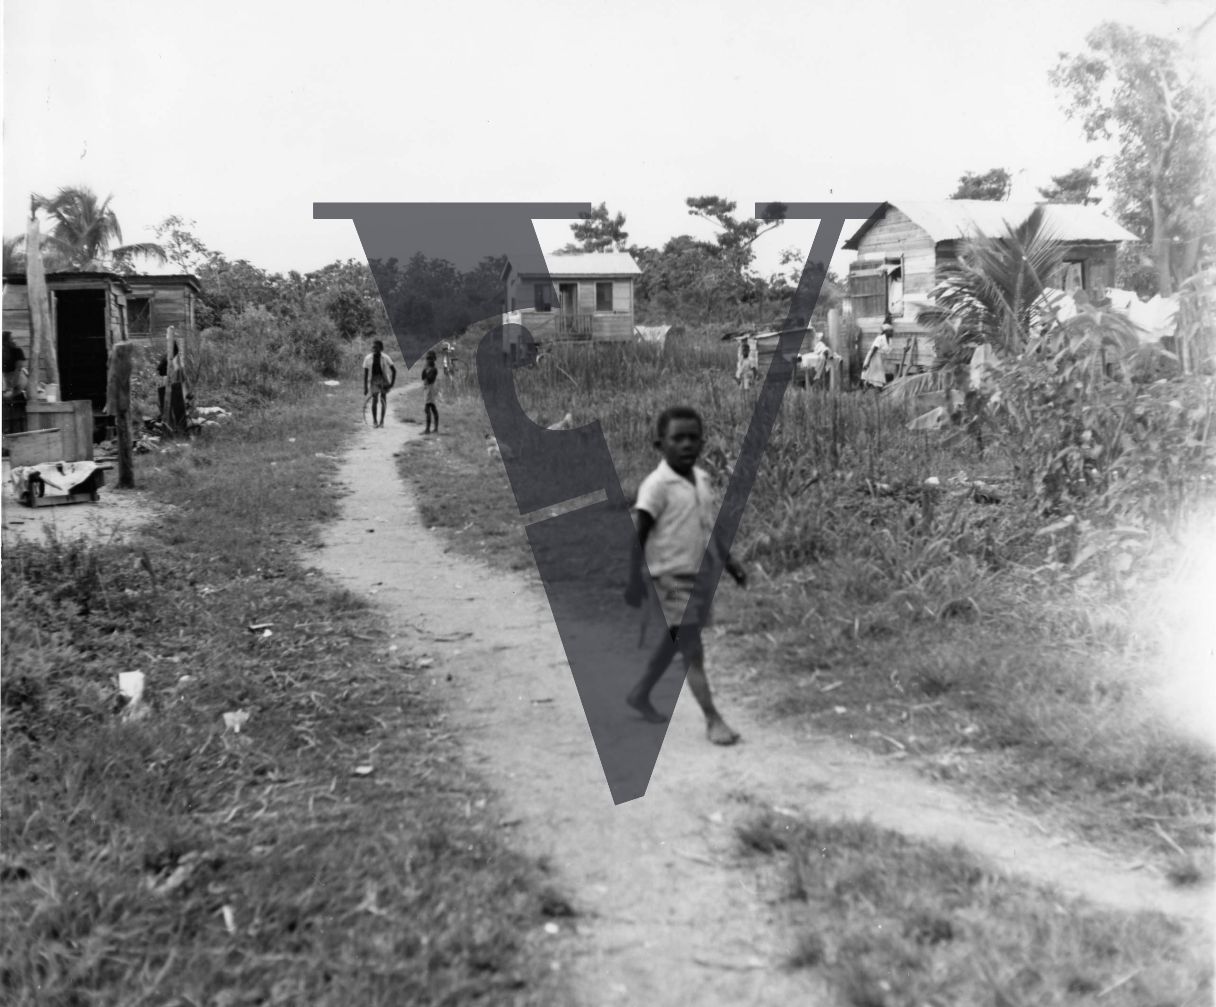 Belize, rural village, boy in shot.